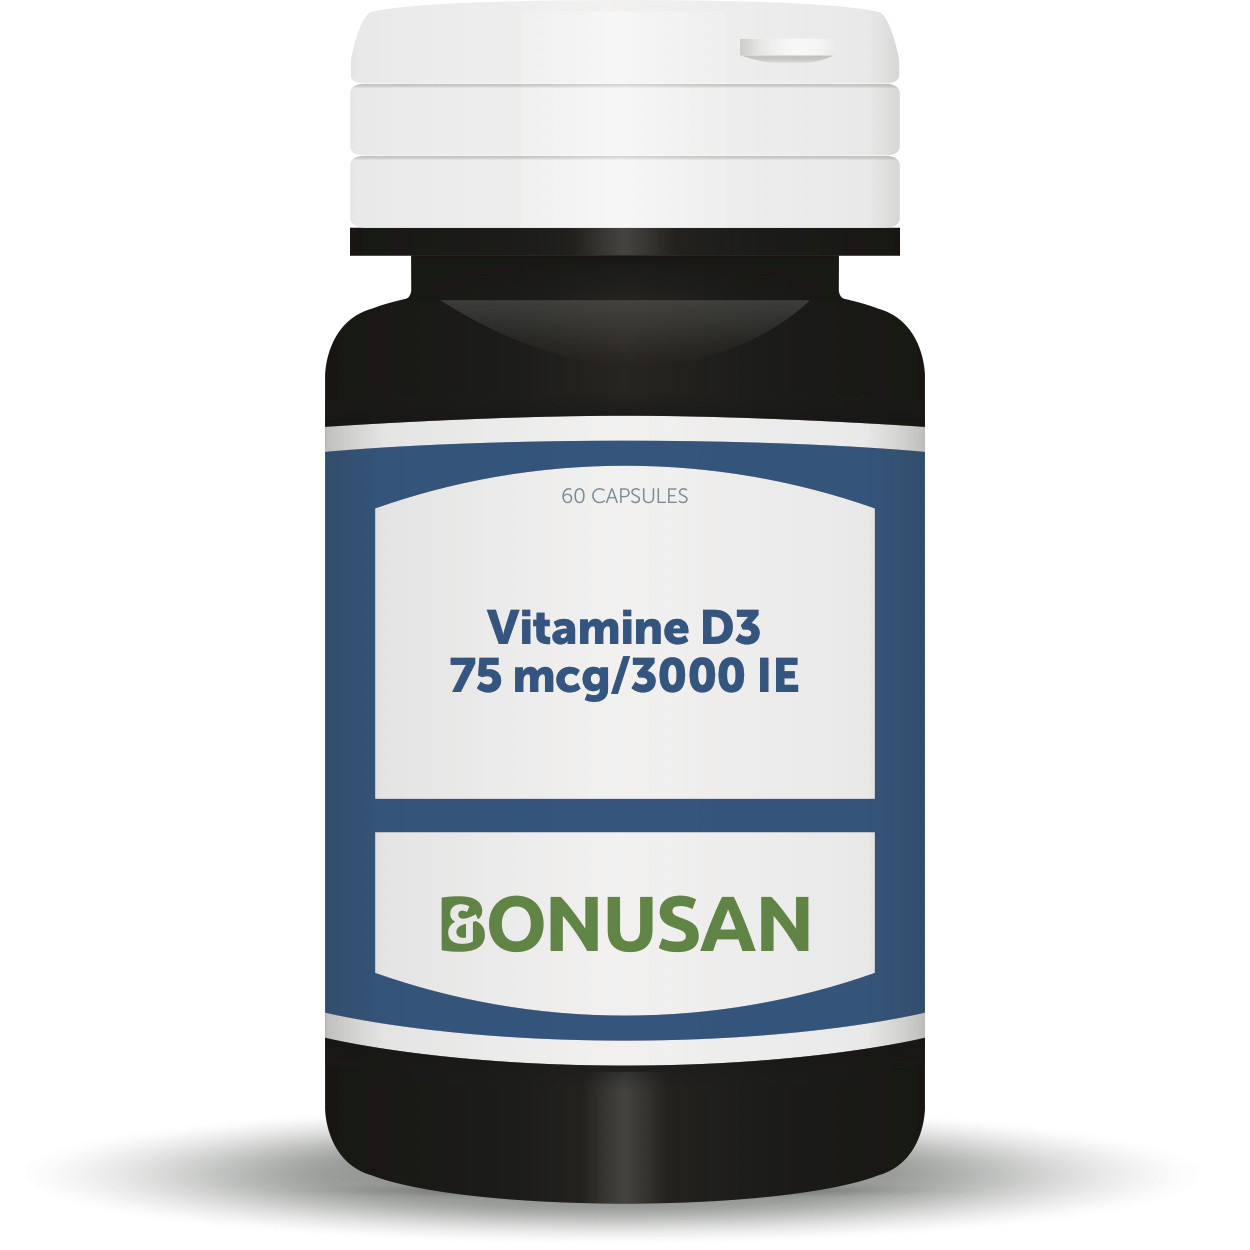 Bonusan Vitamine D3 75 mcg/3000 IE